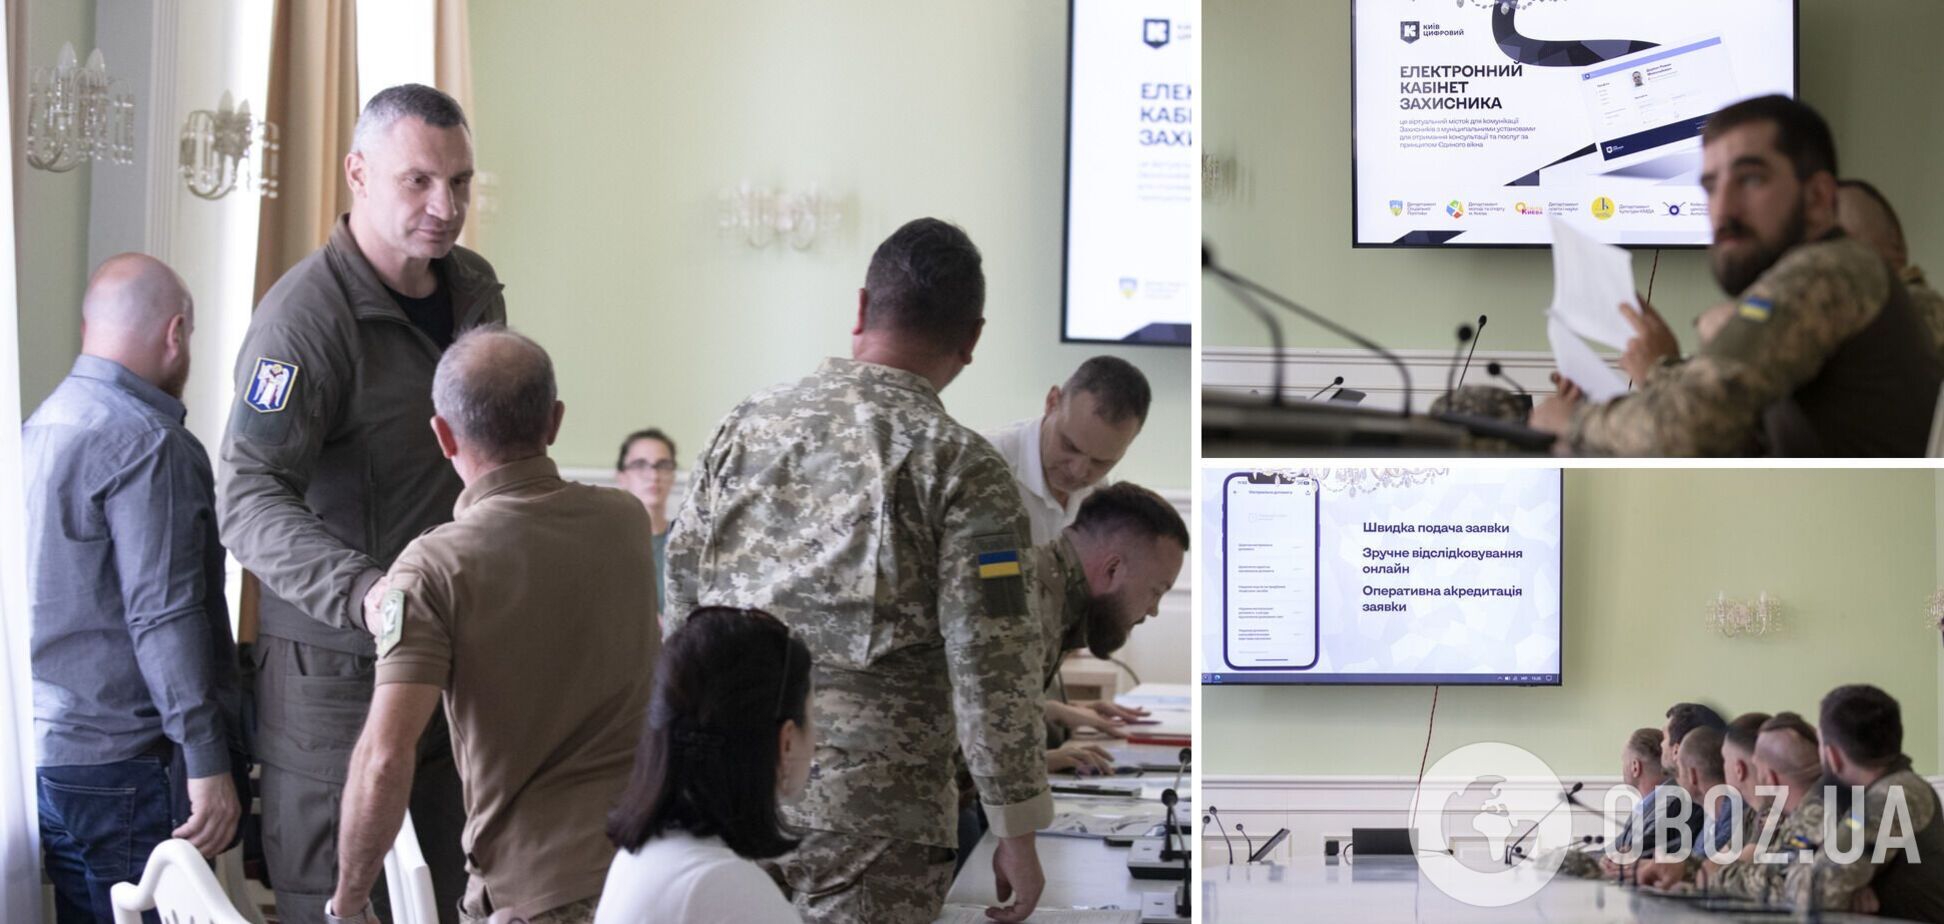 Кличко: в столице презентовали 'Электронный кабинет Защитника', разрабатываемый для киевлян-участников войны